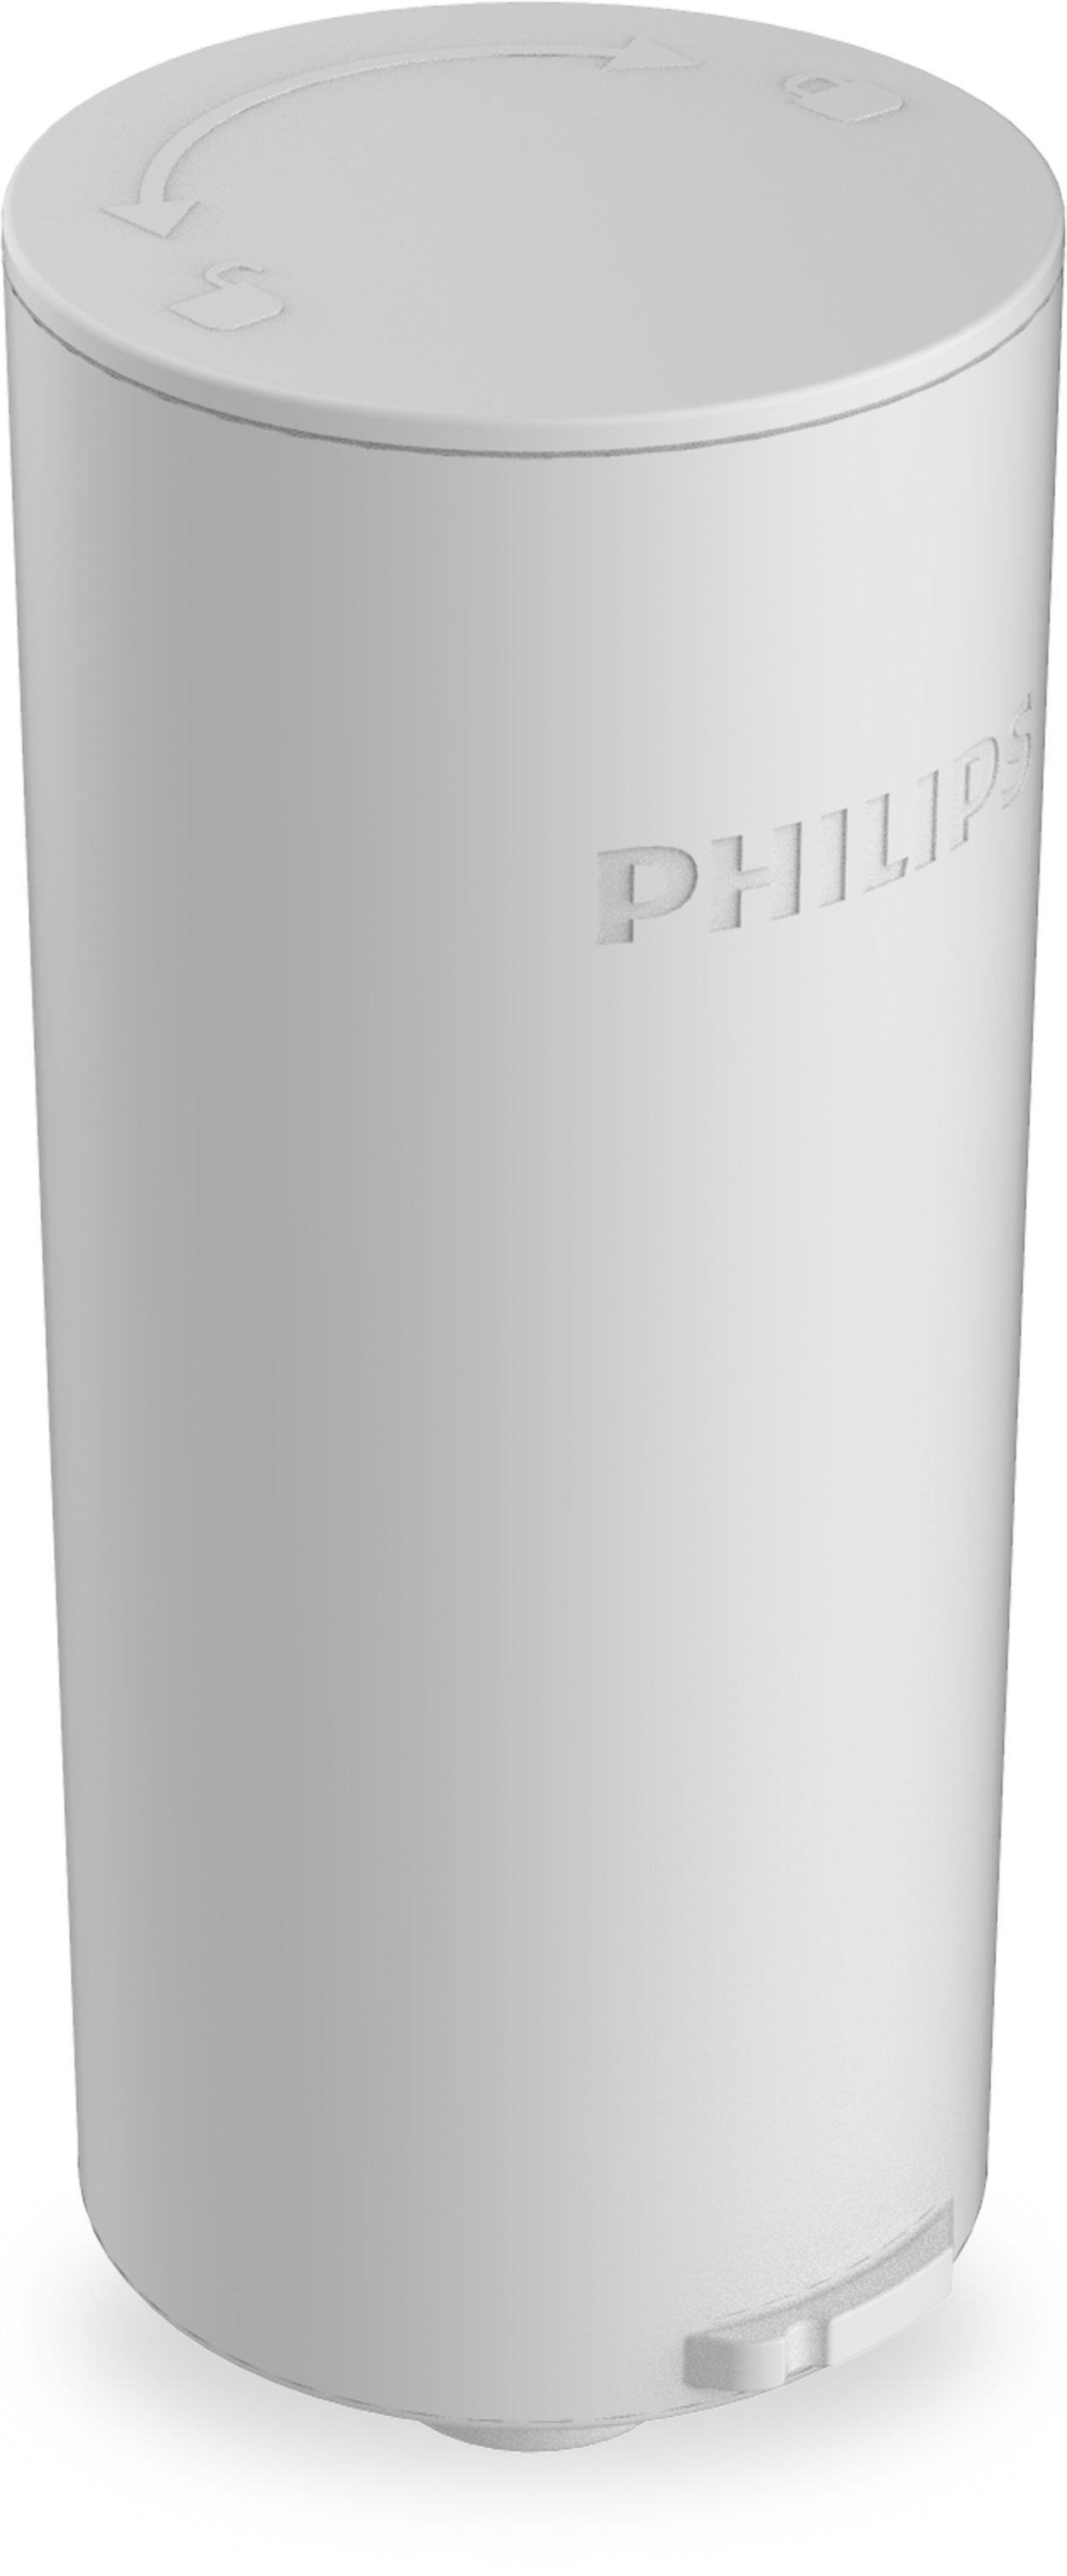 Promo Filtres Pour carafe Filtrante Philips chez Netto